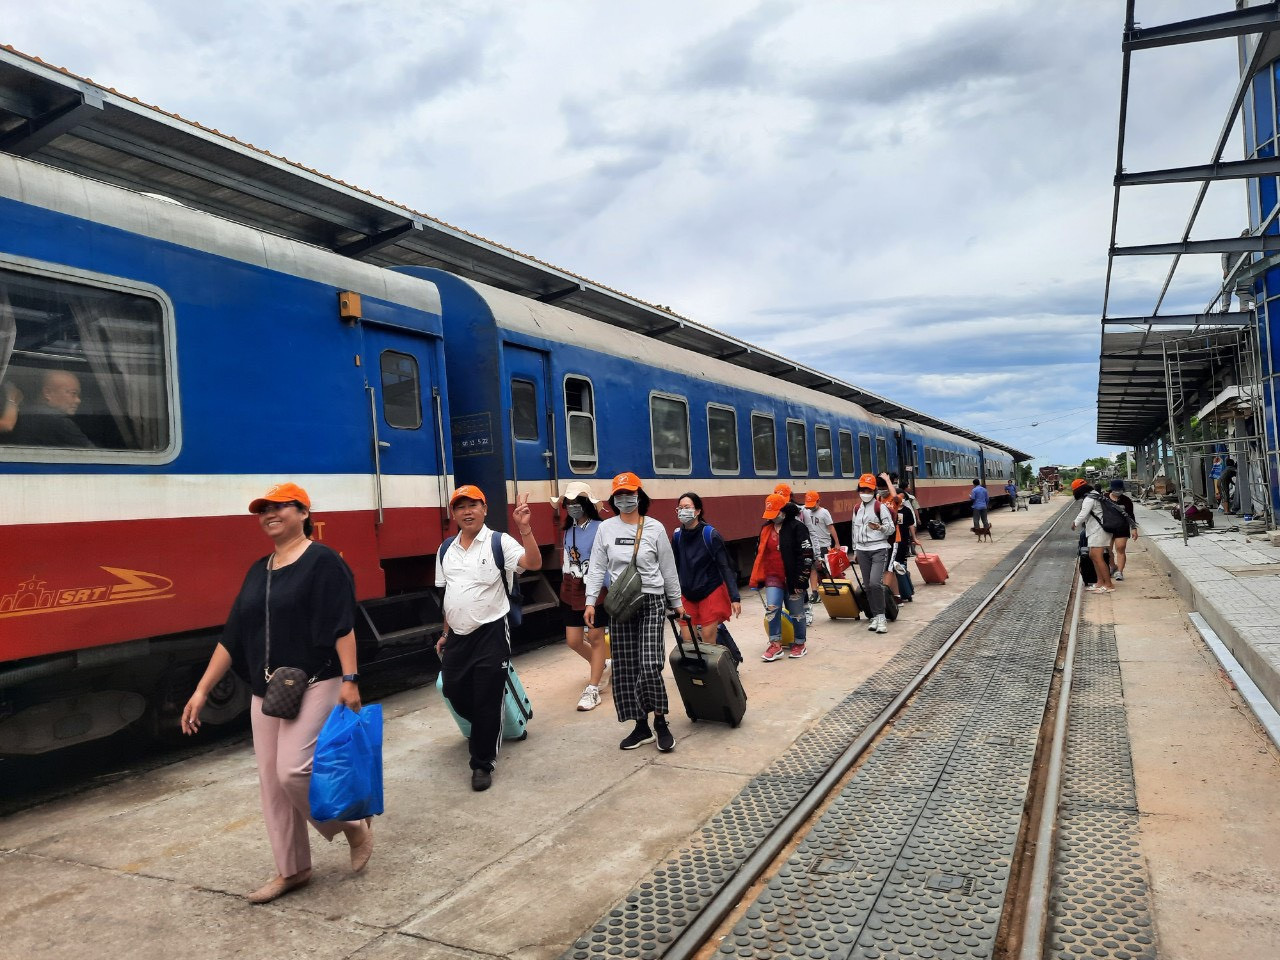 Tour du lịch bằng phương tiện tàu lửa cũng hút khách.